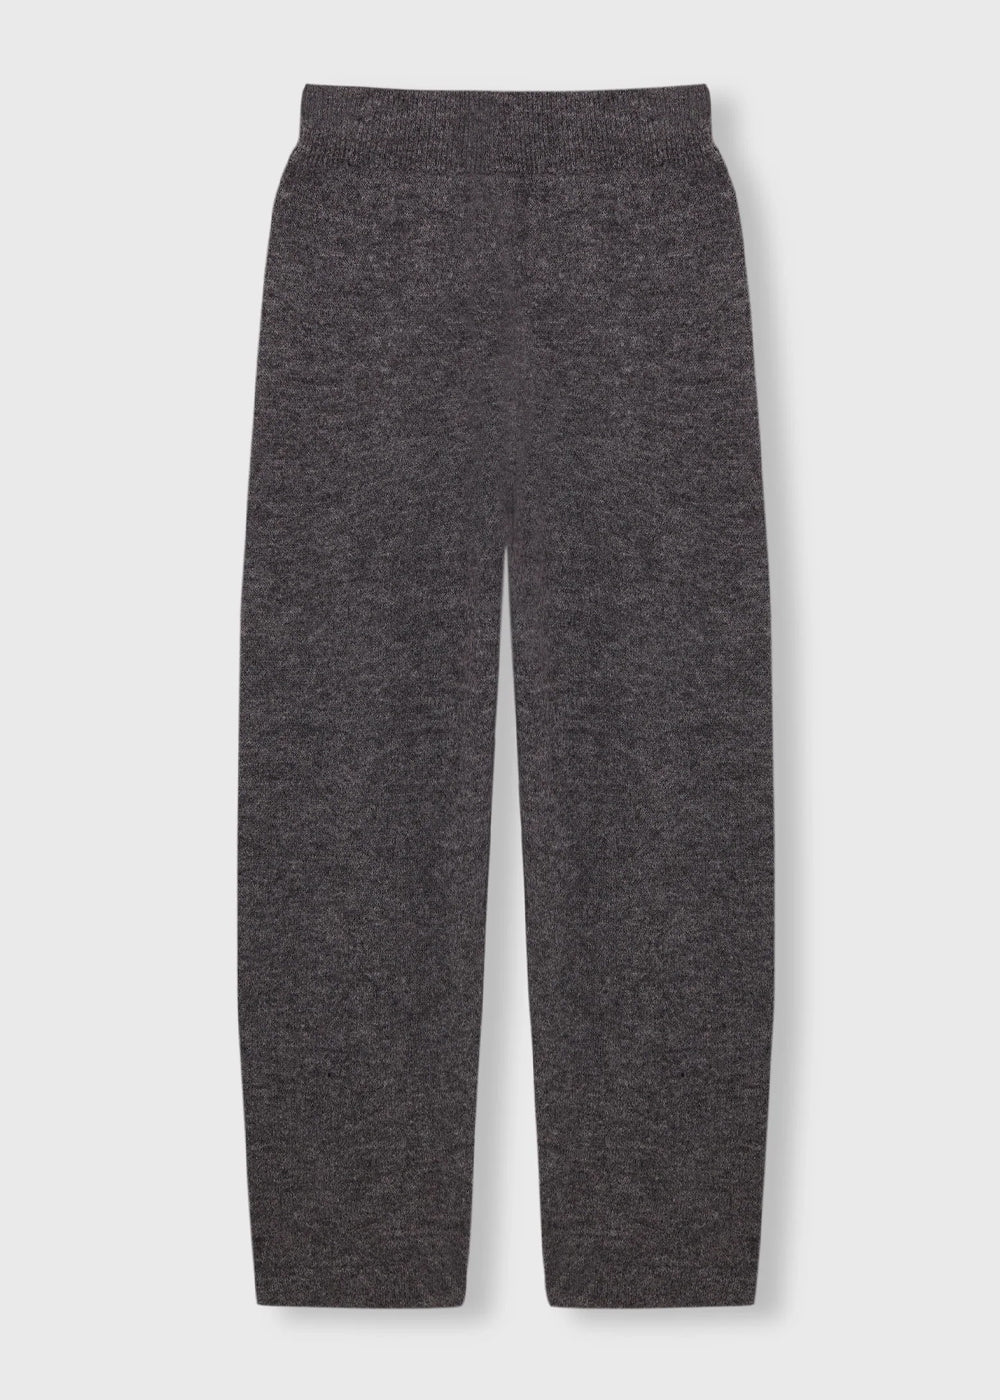 Grey Baby Alpaca Knit Pants